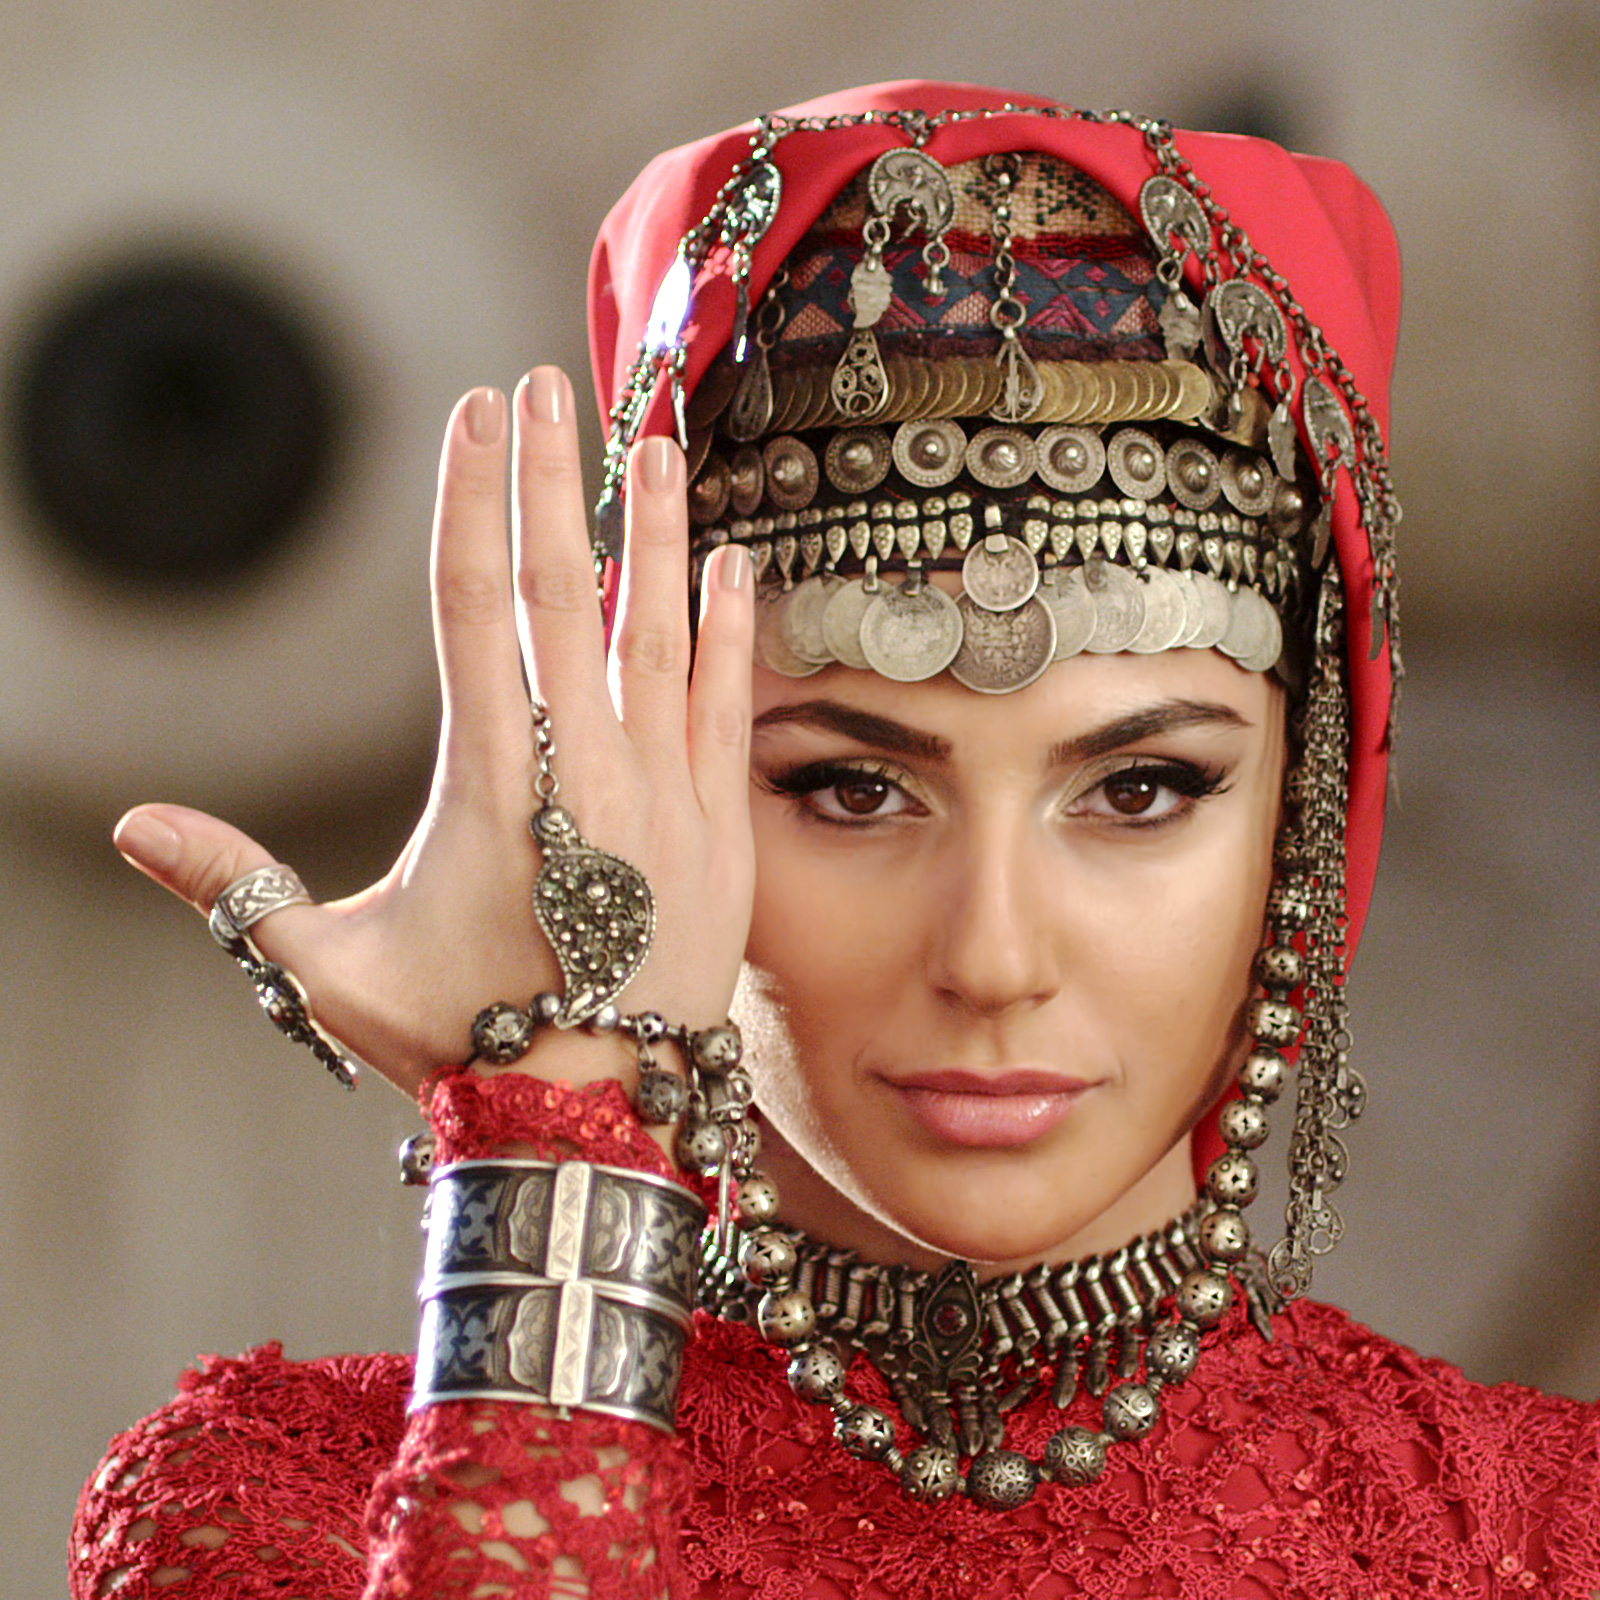 armenian women body types